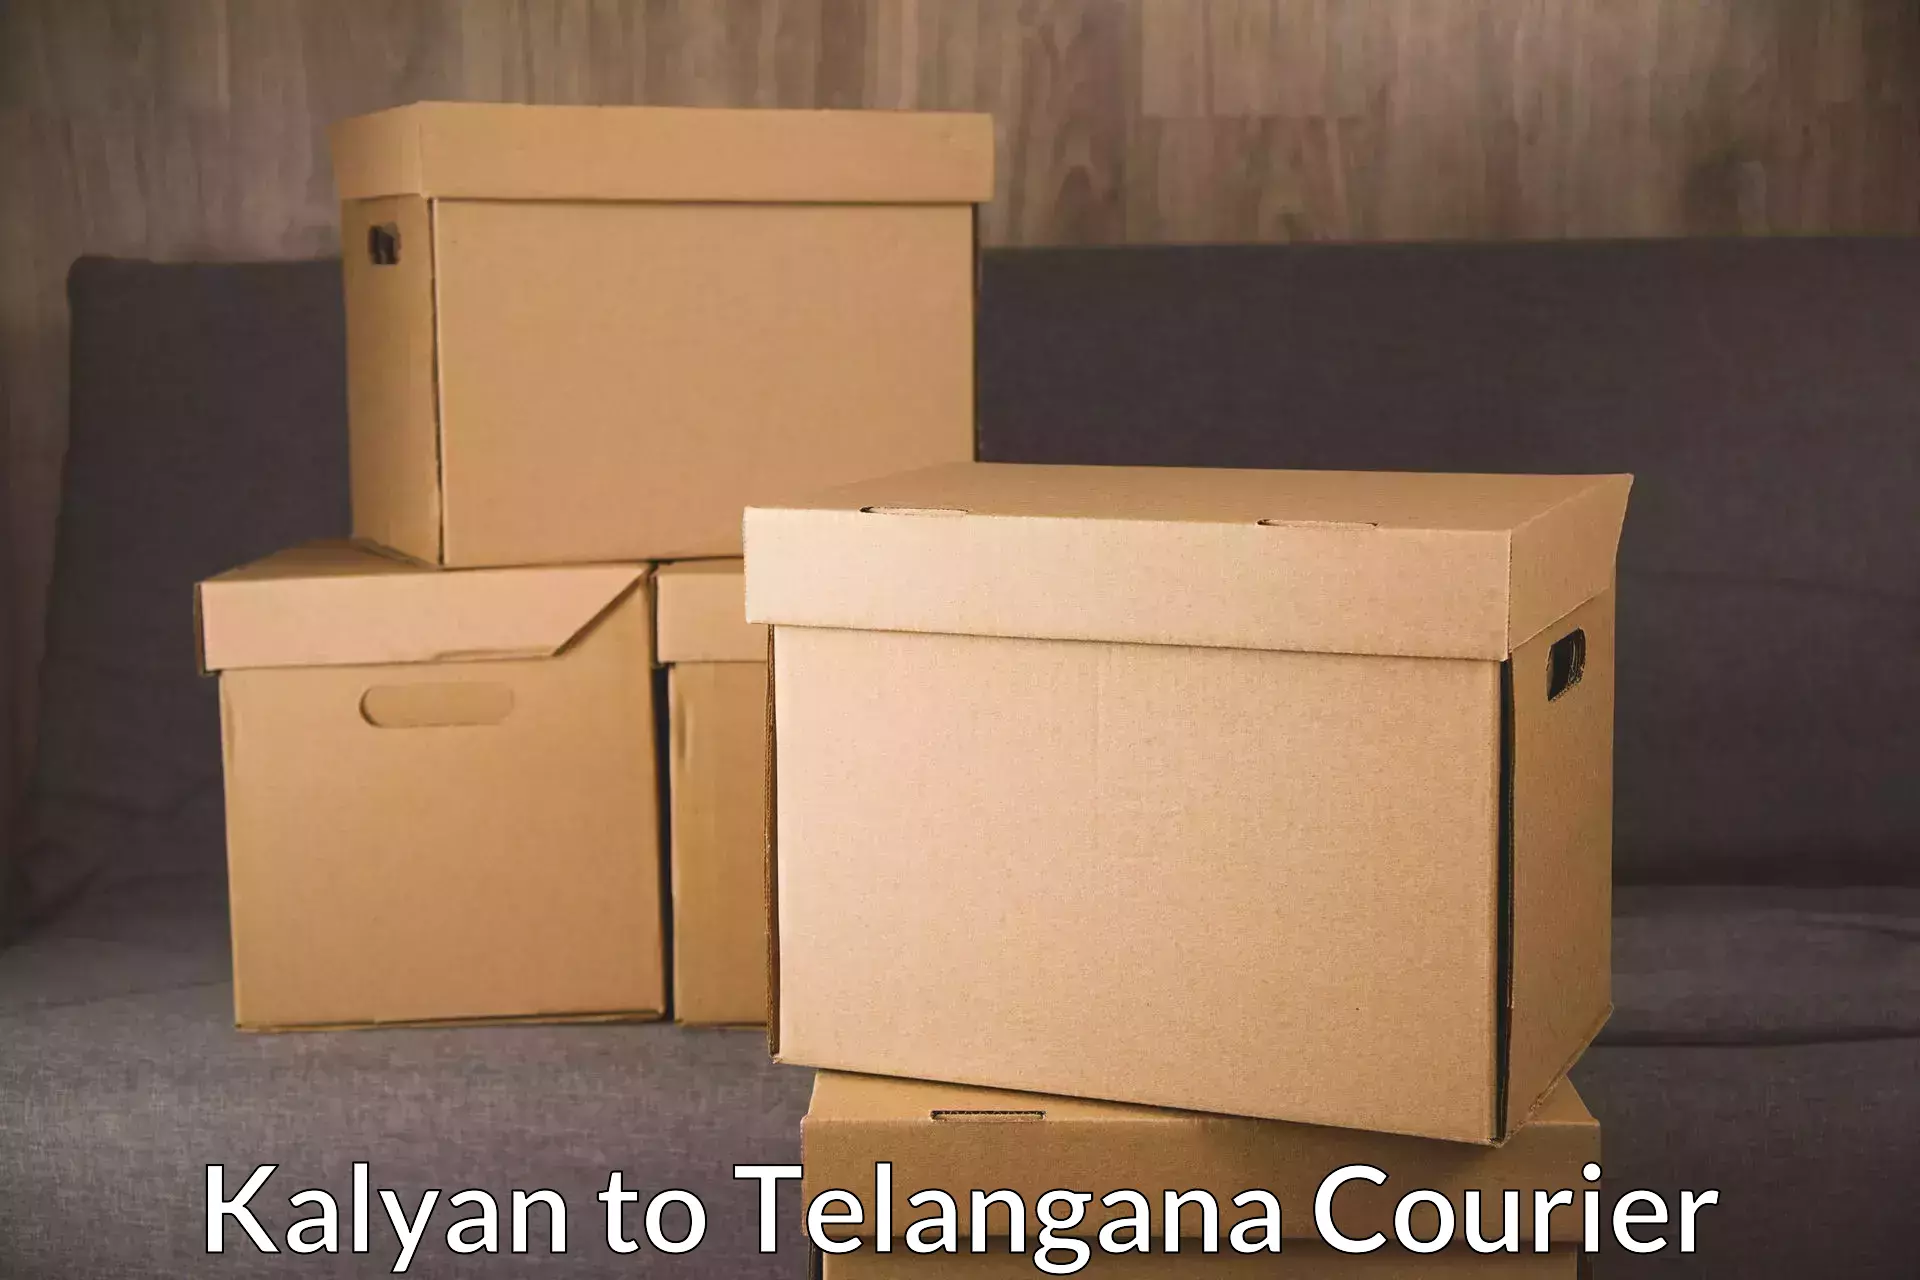 Premium courier solutions Kalyan to Gangadhara